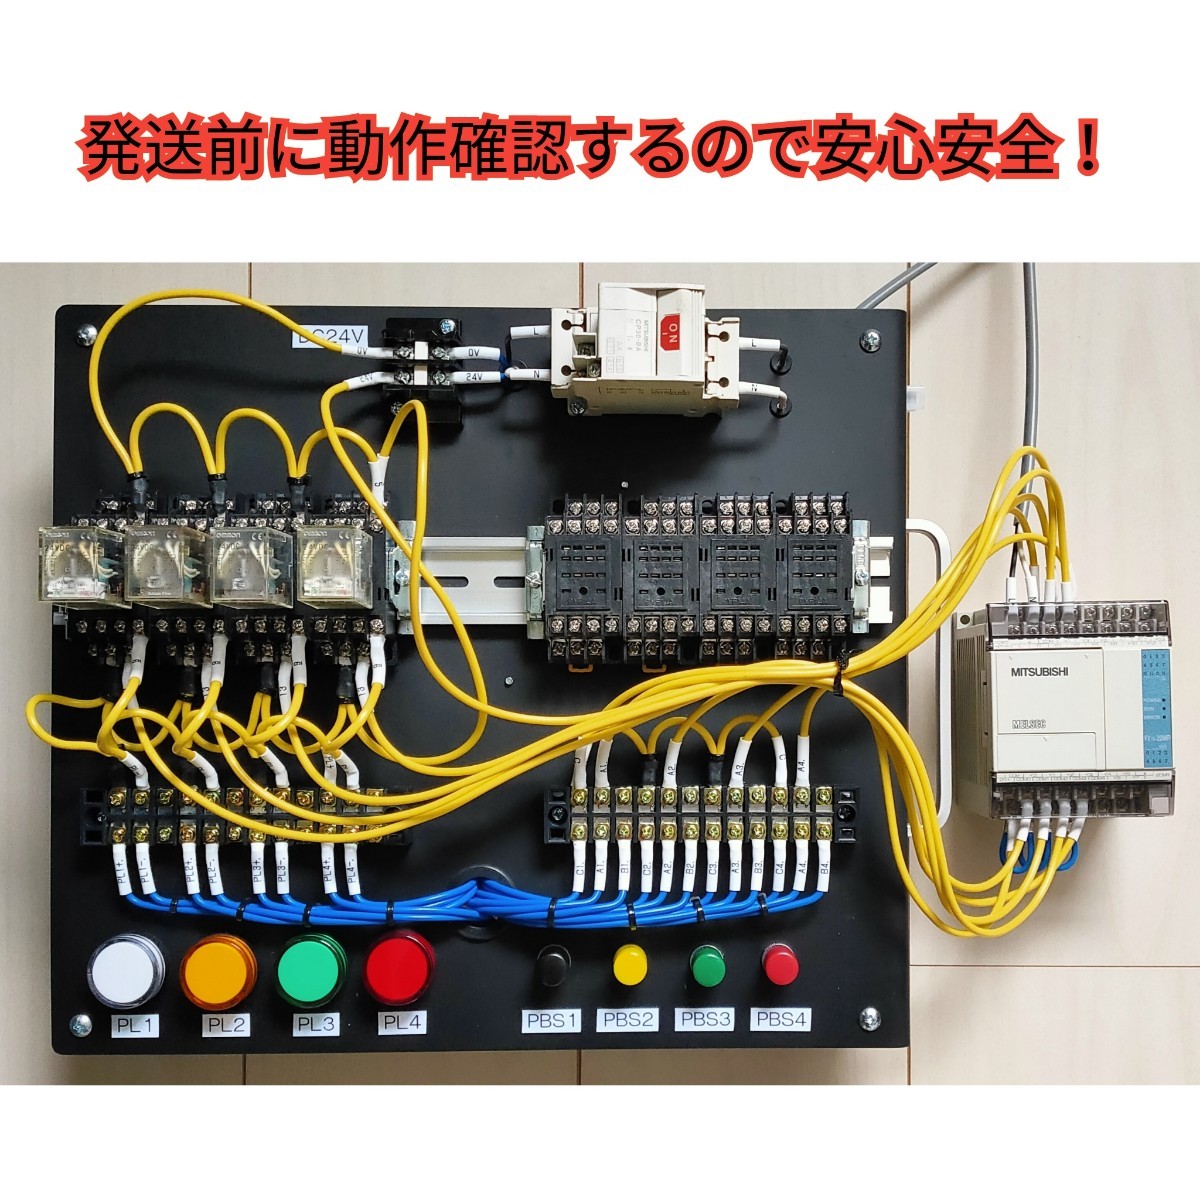 機械保全1級・2級 機械保全技能検定 電気系保全作業 検定盤 電気保全